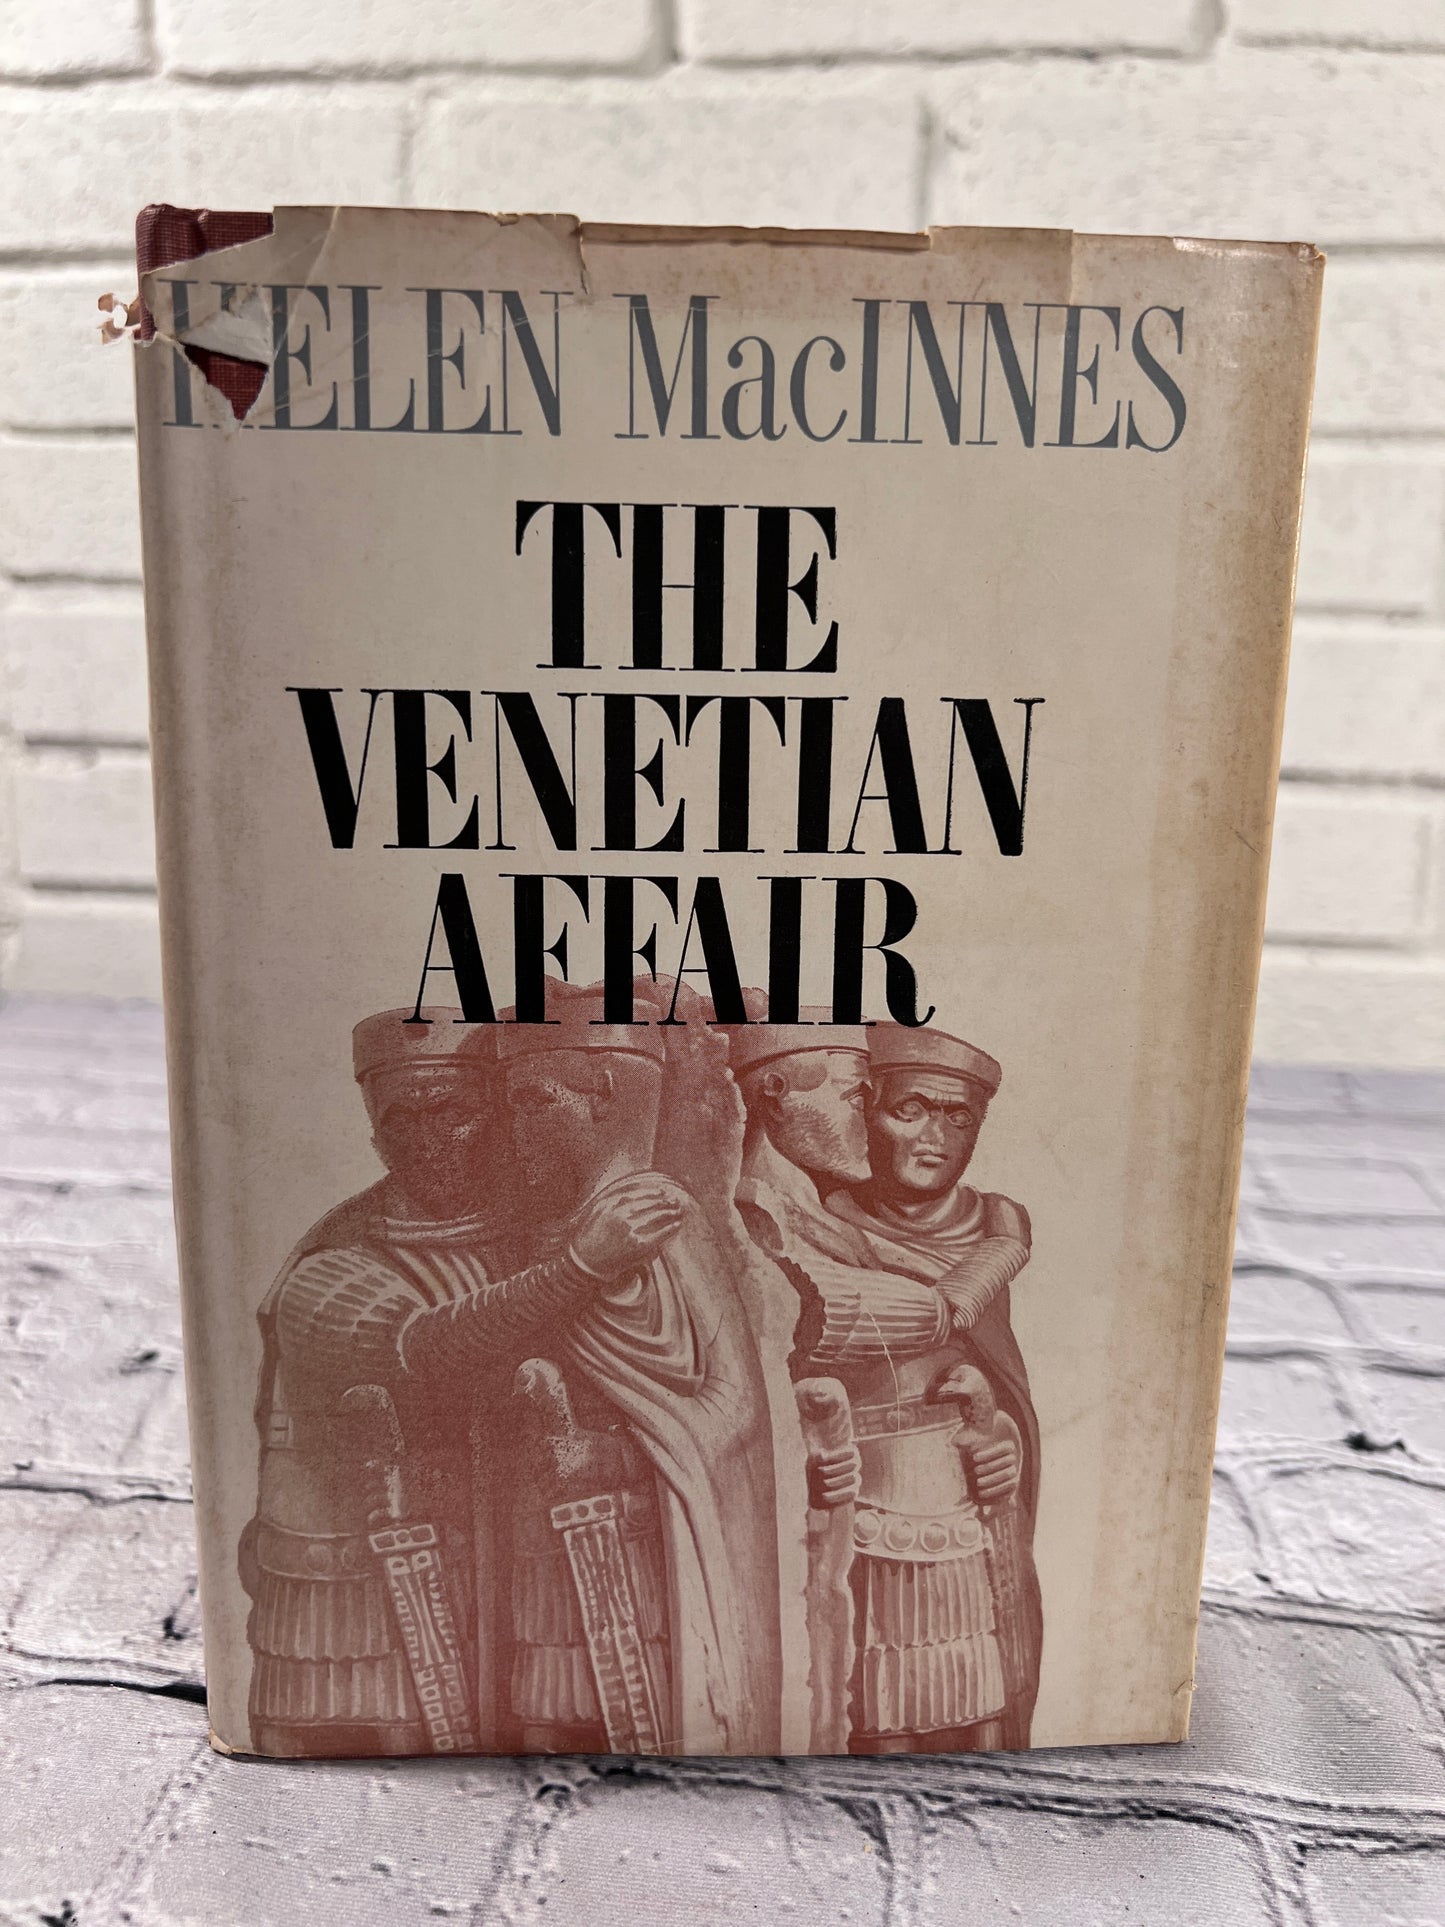 The Venetian Affair by Helen MacInnes [1963 · 1st Edition]